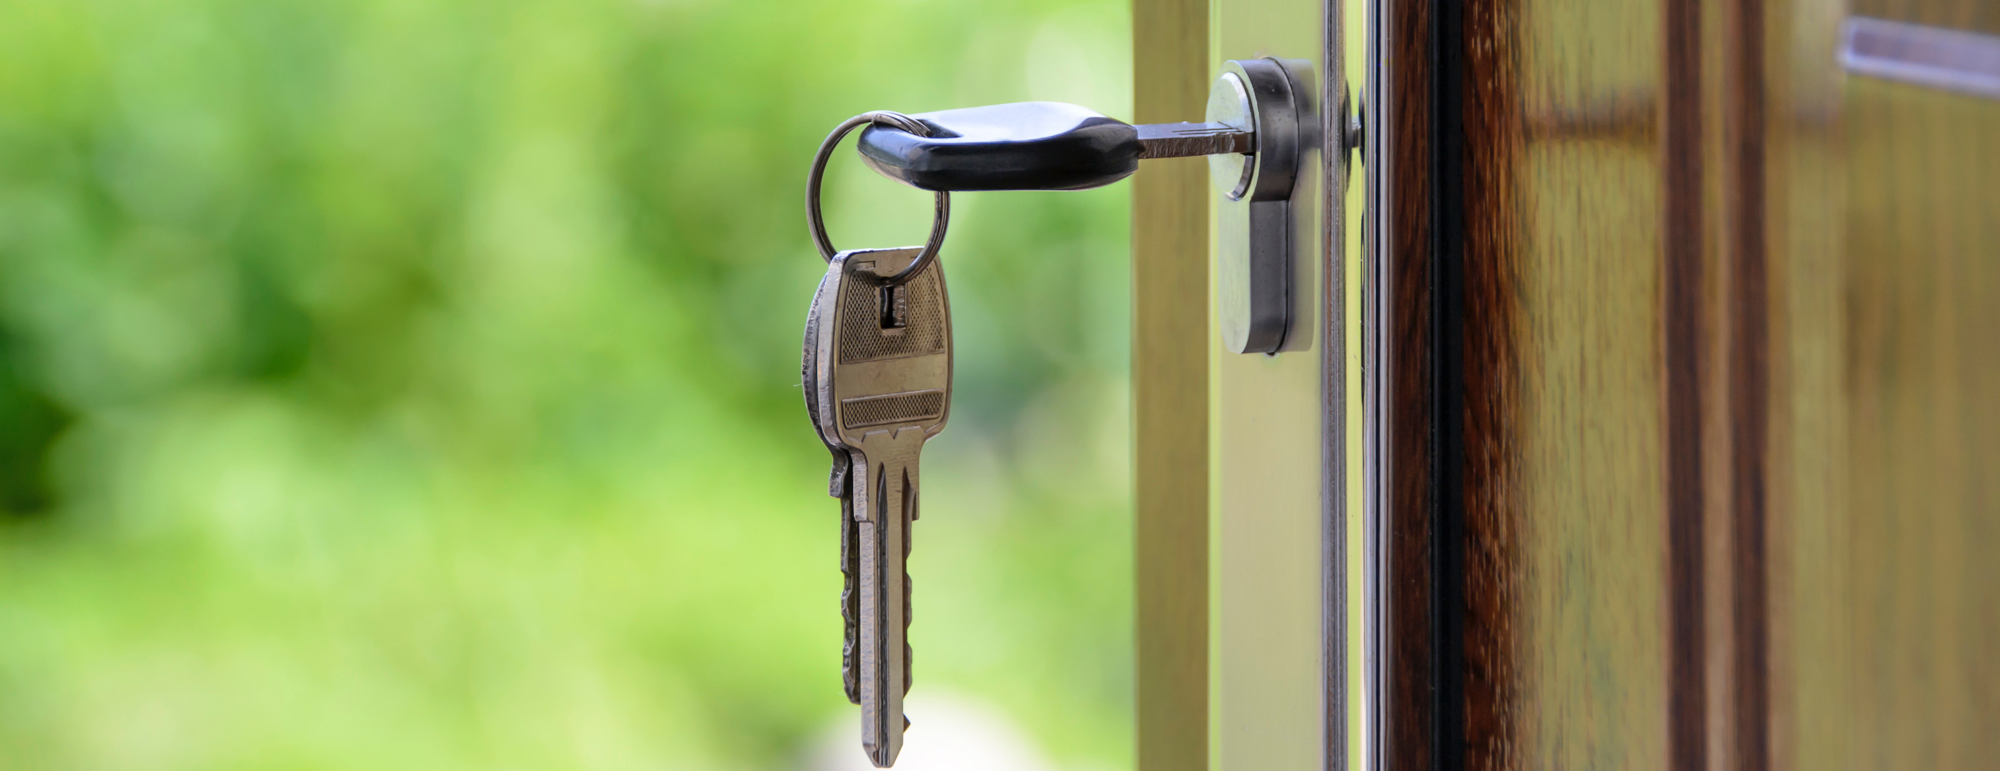 key in the lock of a front door